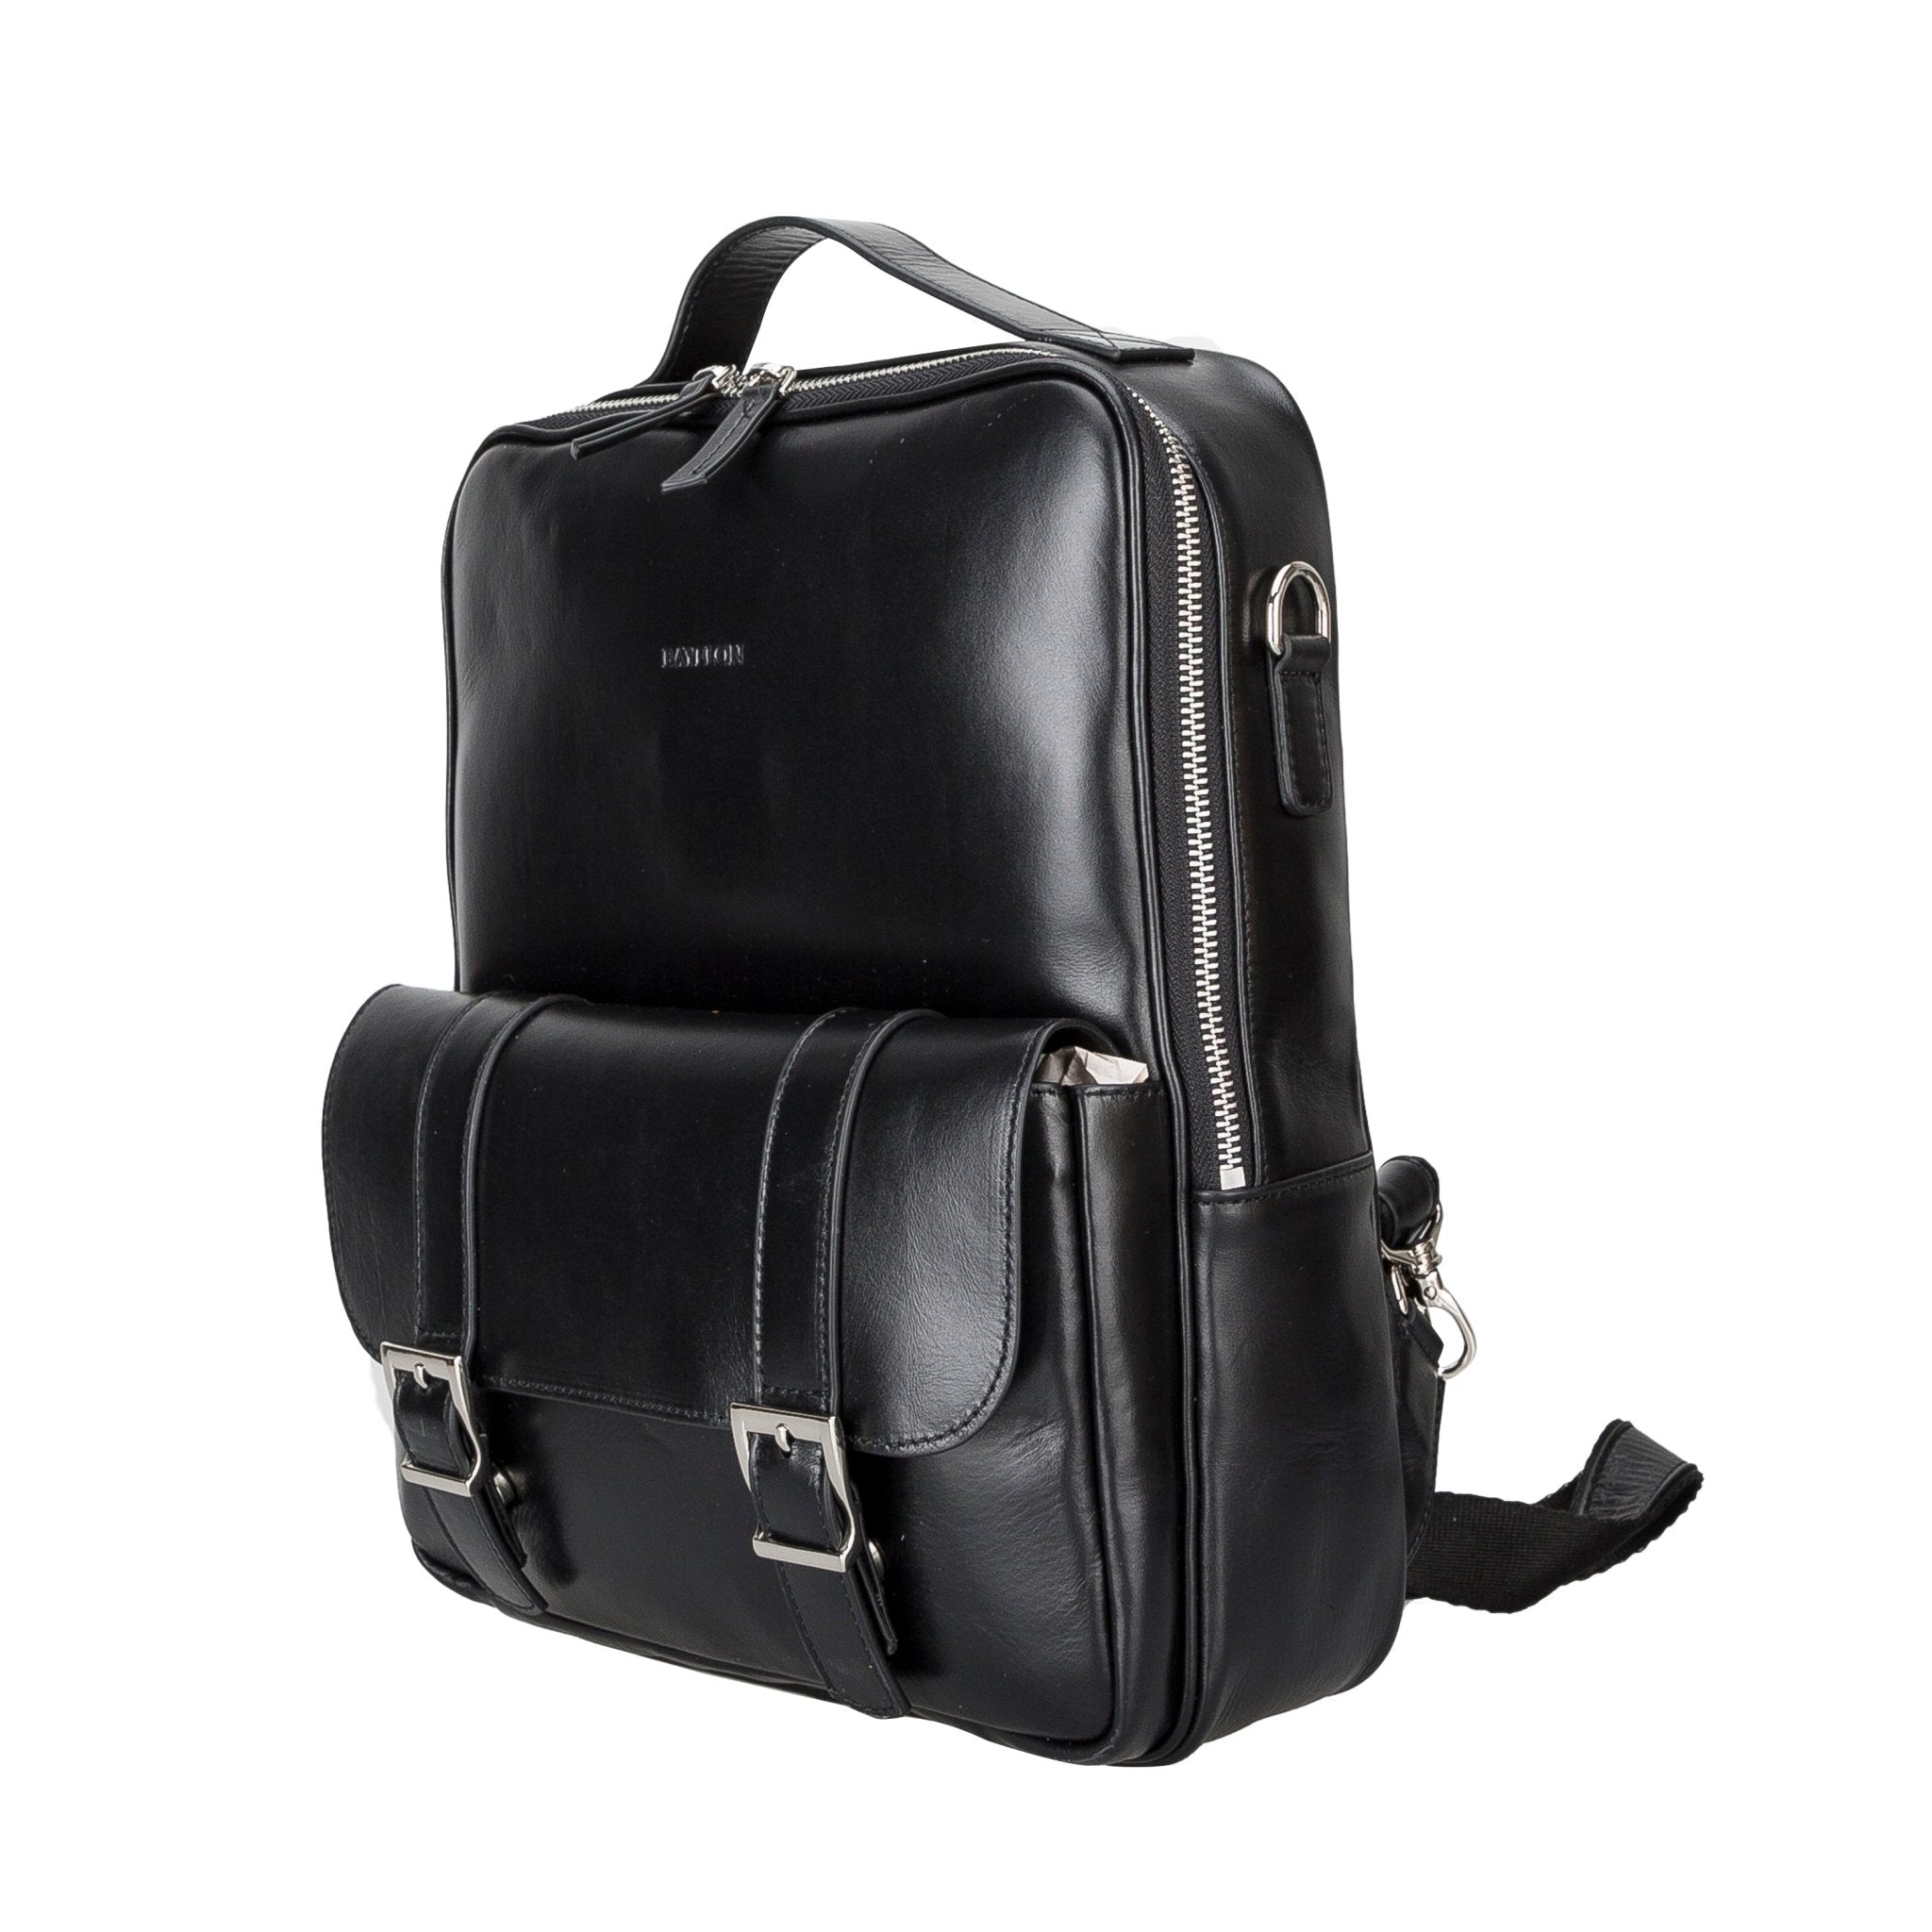 Leather Backpack Bag - G - Line